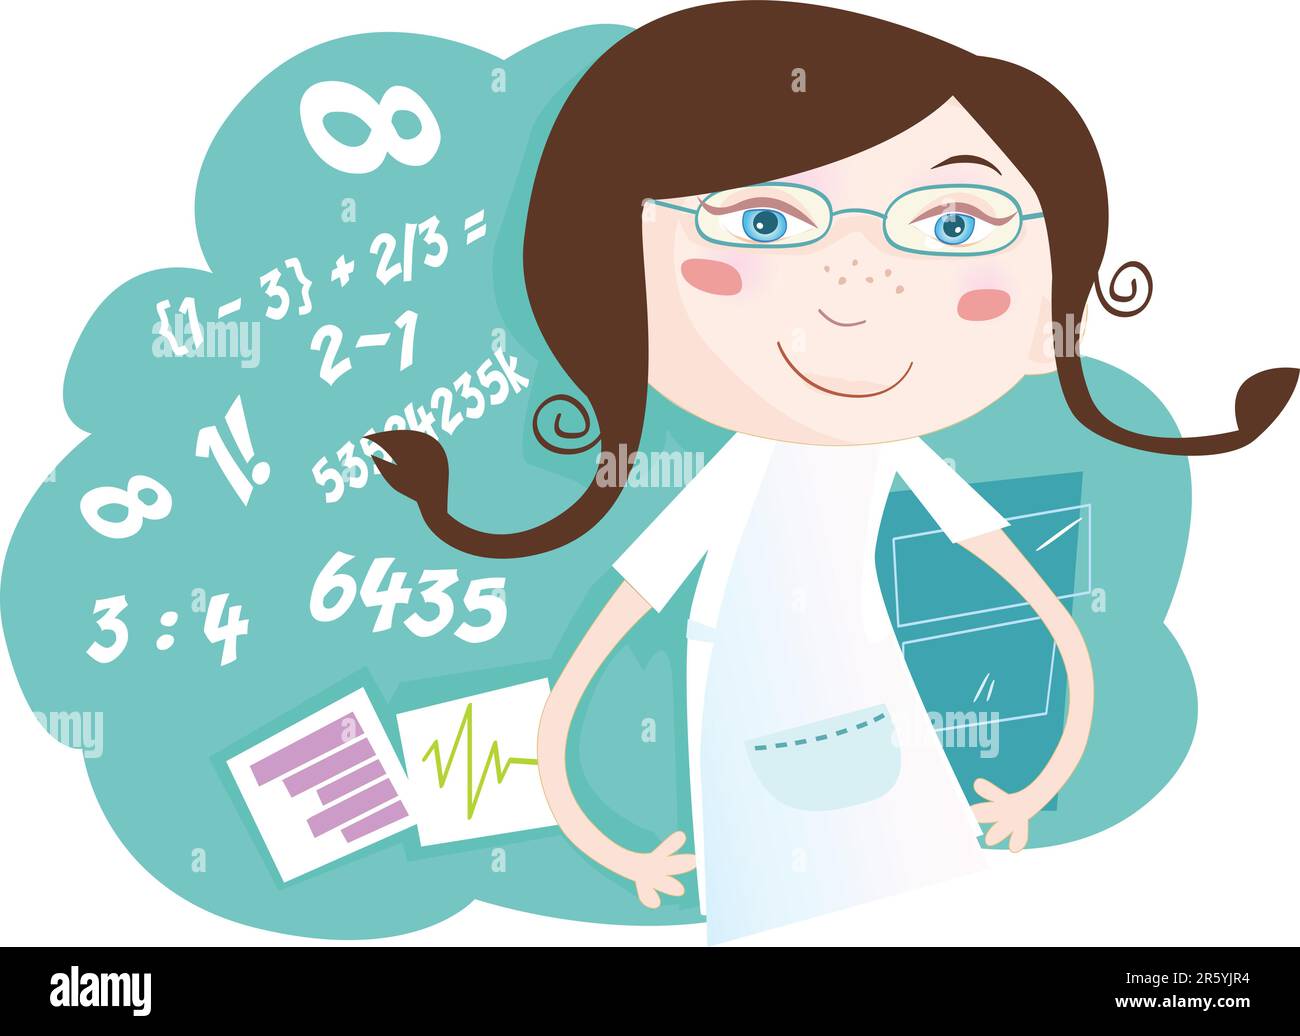 Sie liebt Mathe! Eine Vektormädchen-Figur mit Zahlen. Art-Vektor-Illustration. Ähnliche Bilder in meinem Portfolio! Stock Vektor